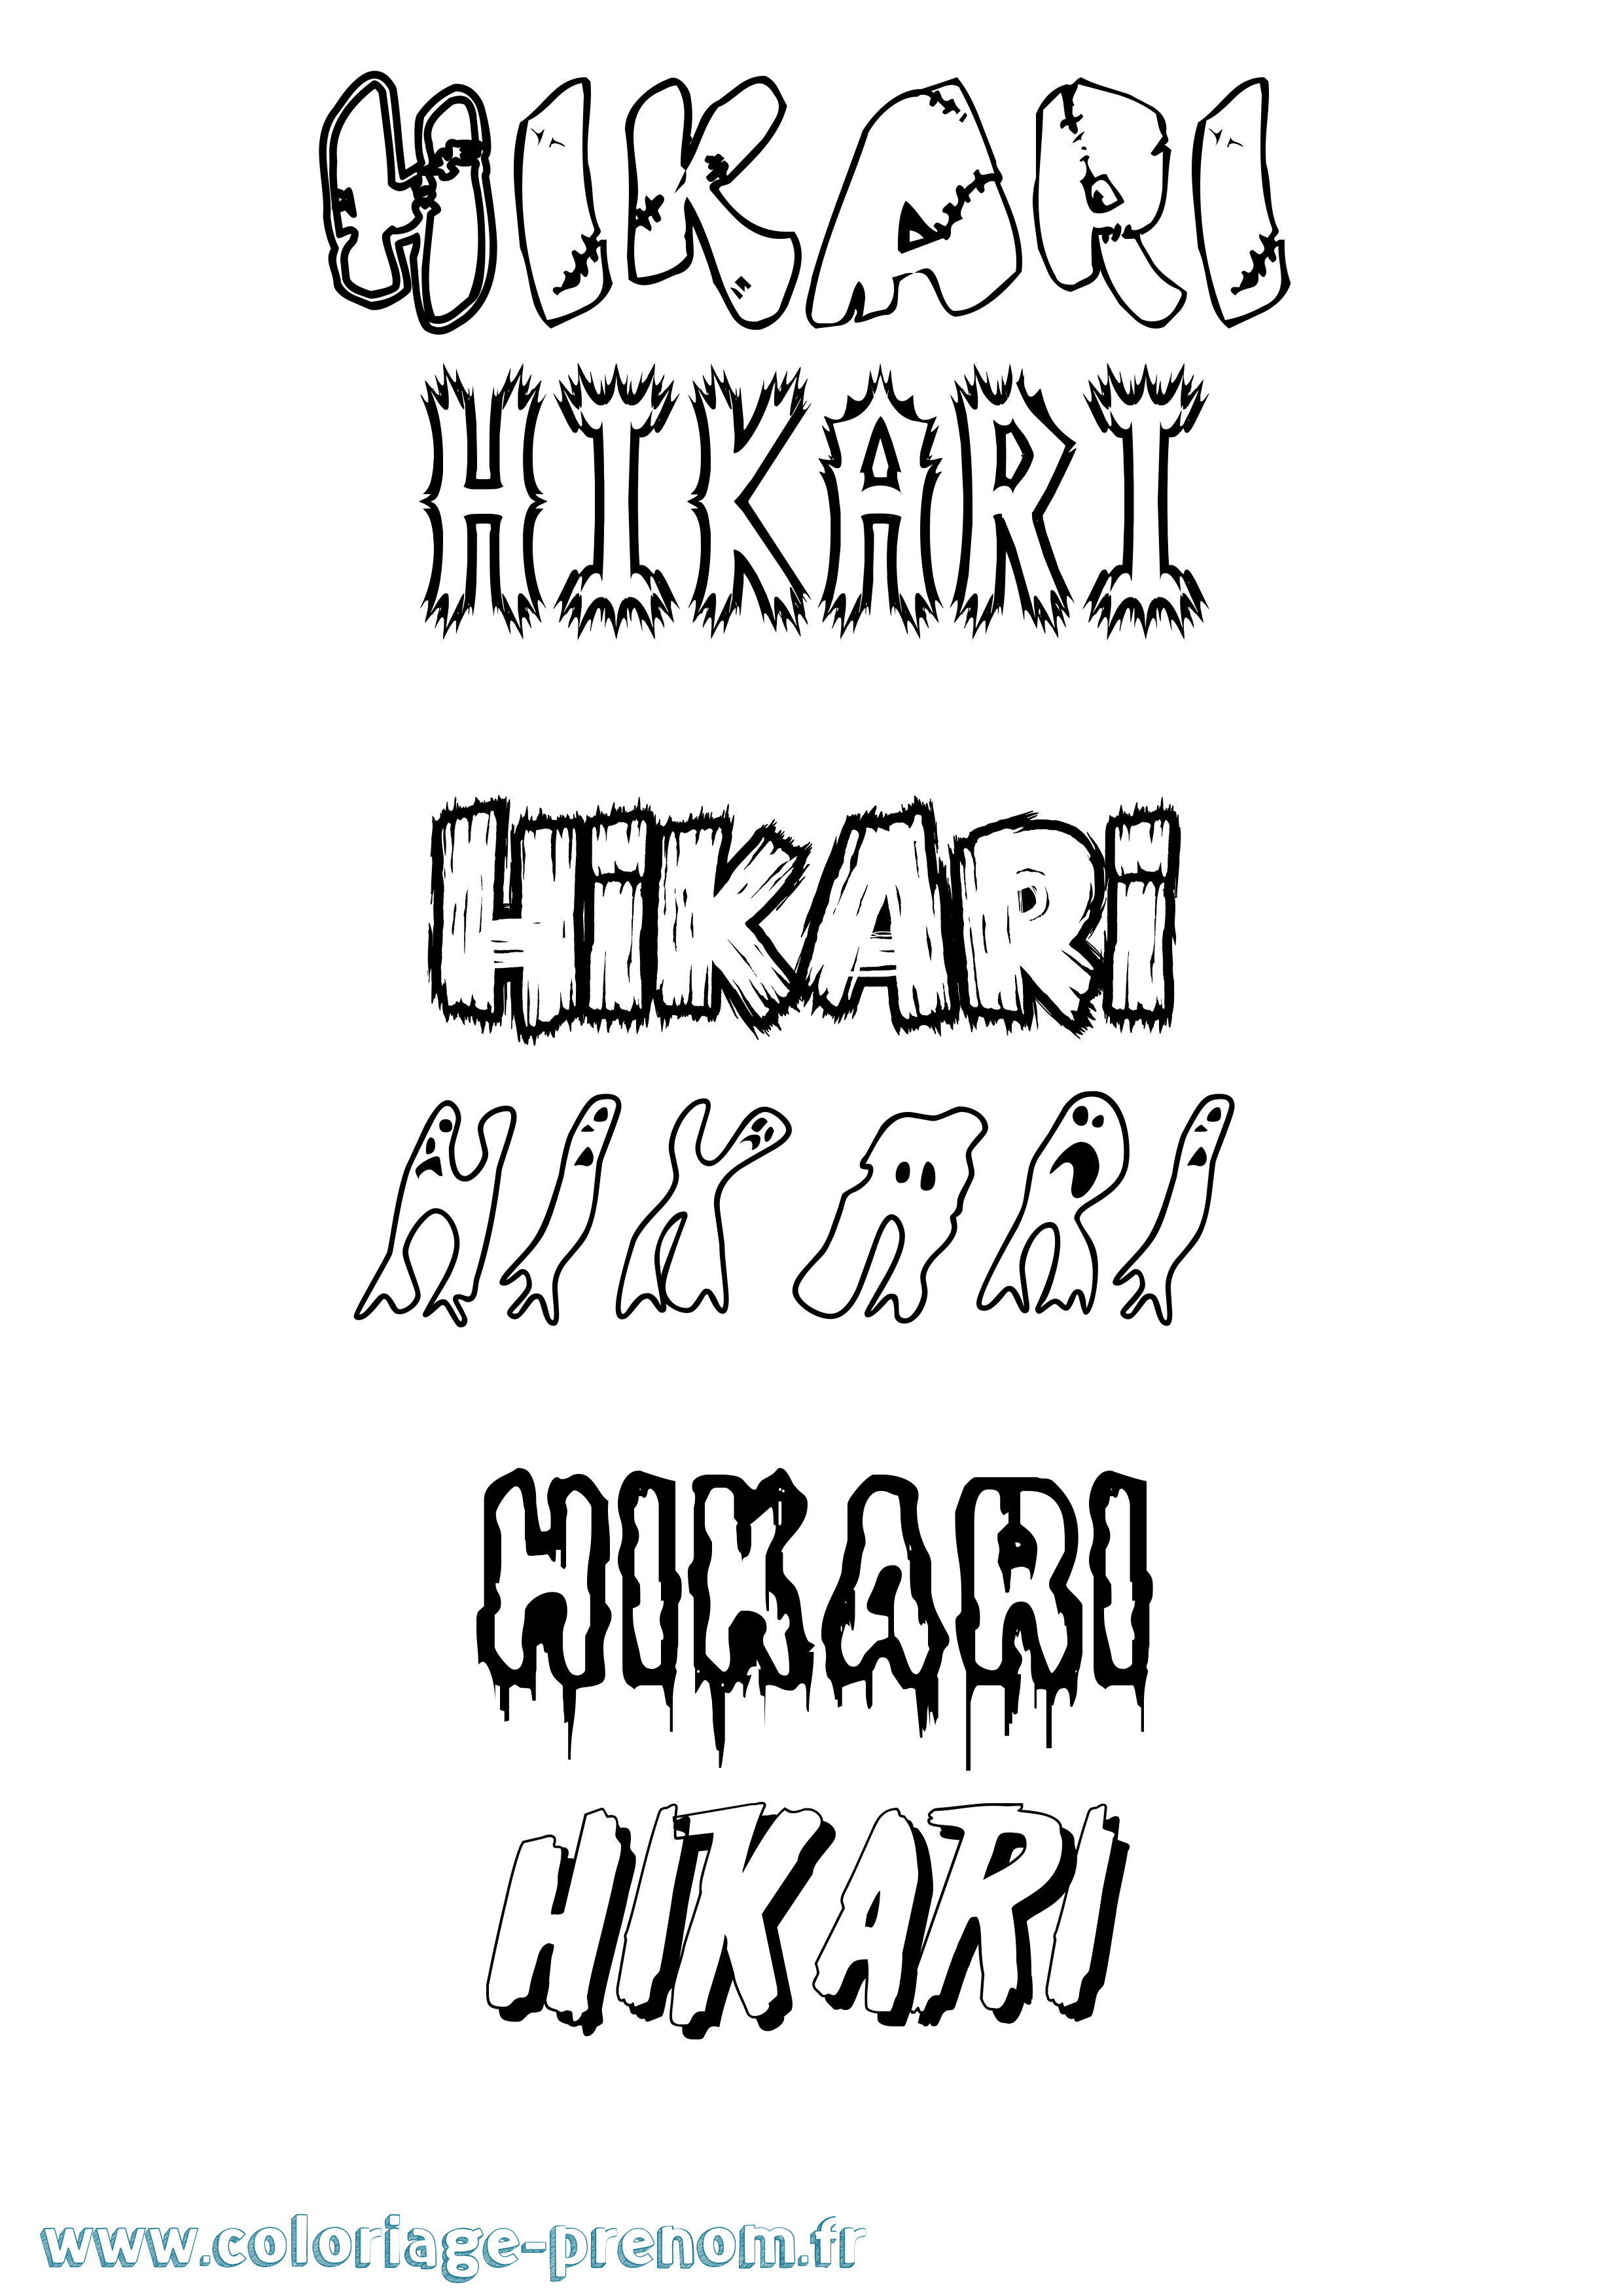 Coloriage prénom Hikari Frisson